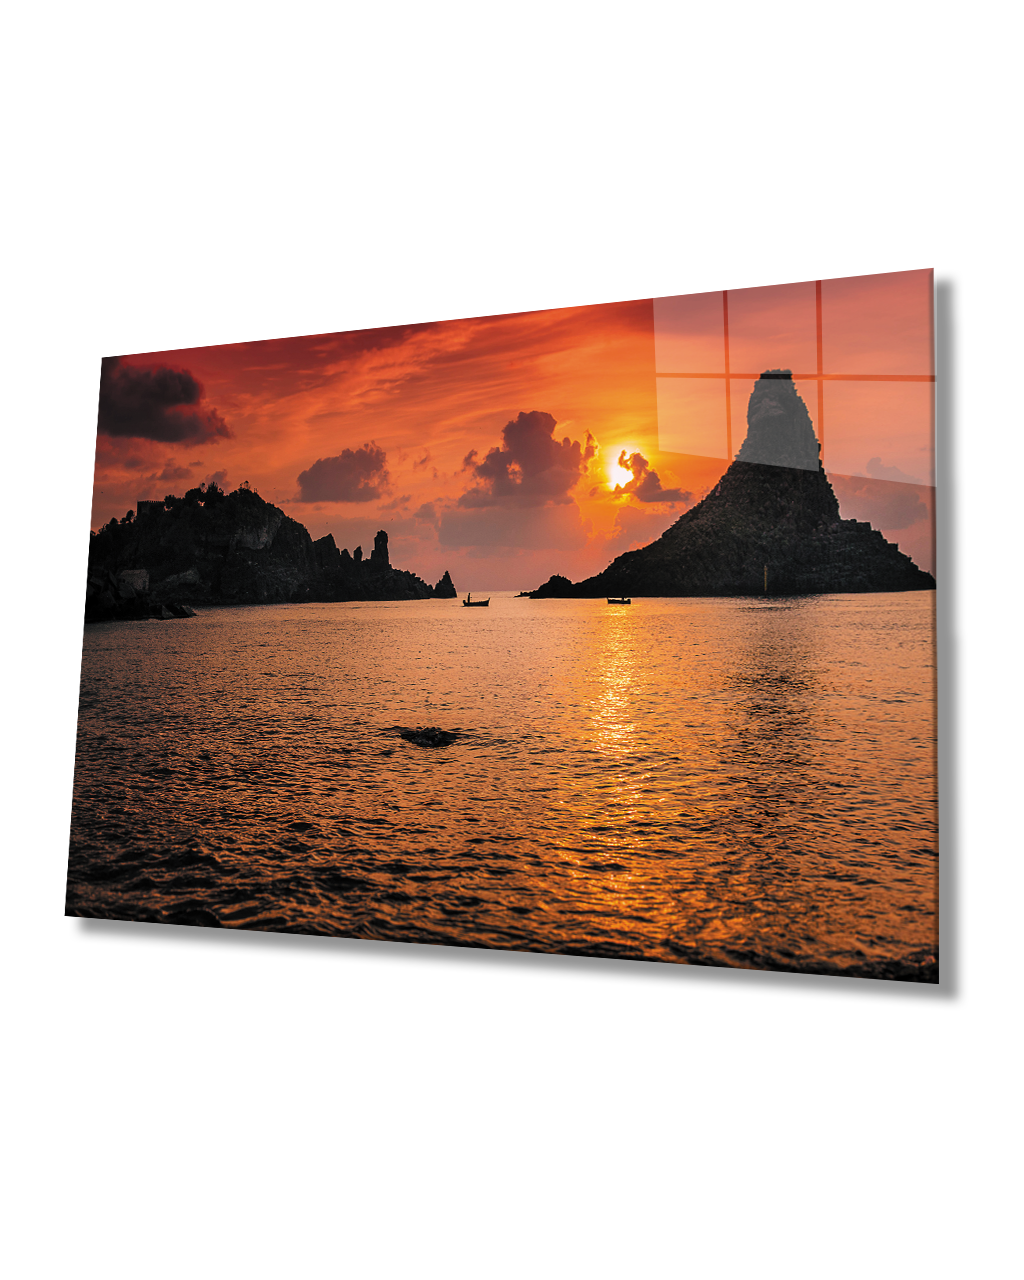 Gün Batımı Deniz Kayıklar Cam Tablo  4mm Dayanıklı Temperli Cam Sunset Sea Kayaks Glass Table 4mm Durable Tempered Glass